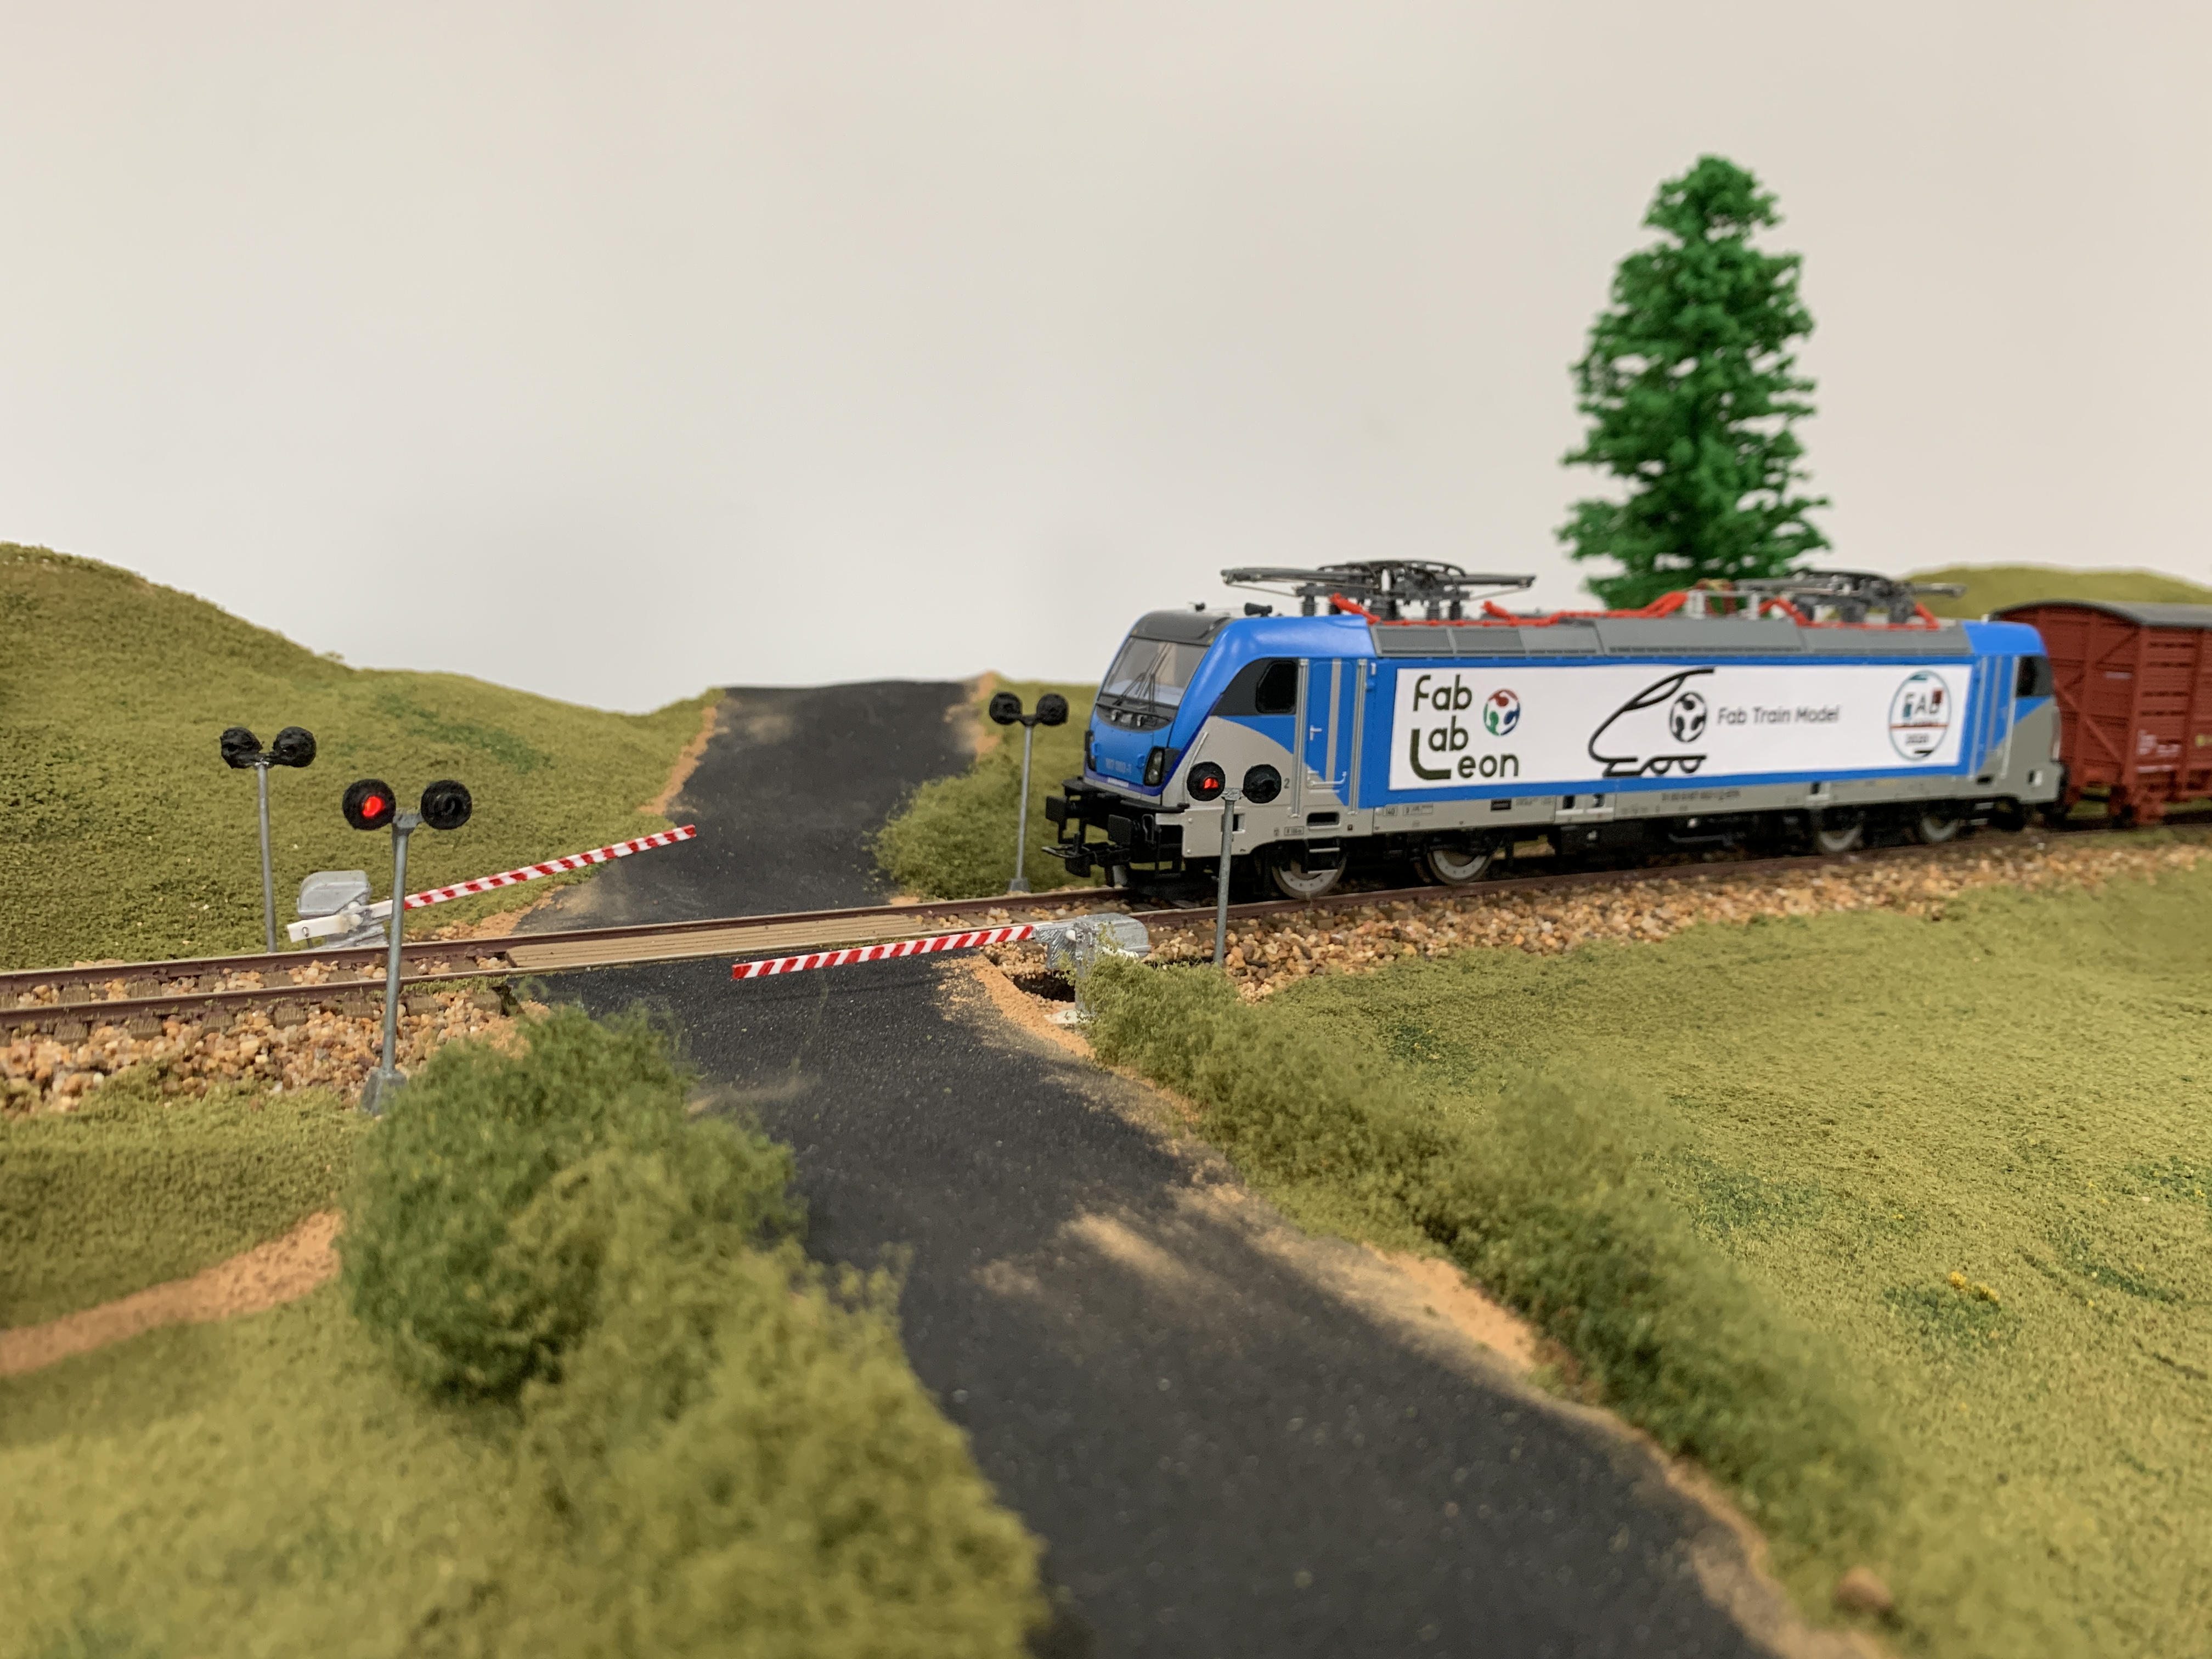 Fab Train Model, By Adrian Torres